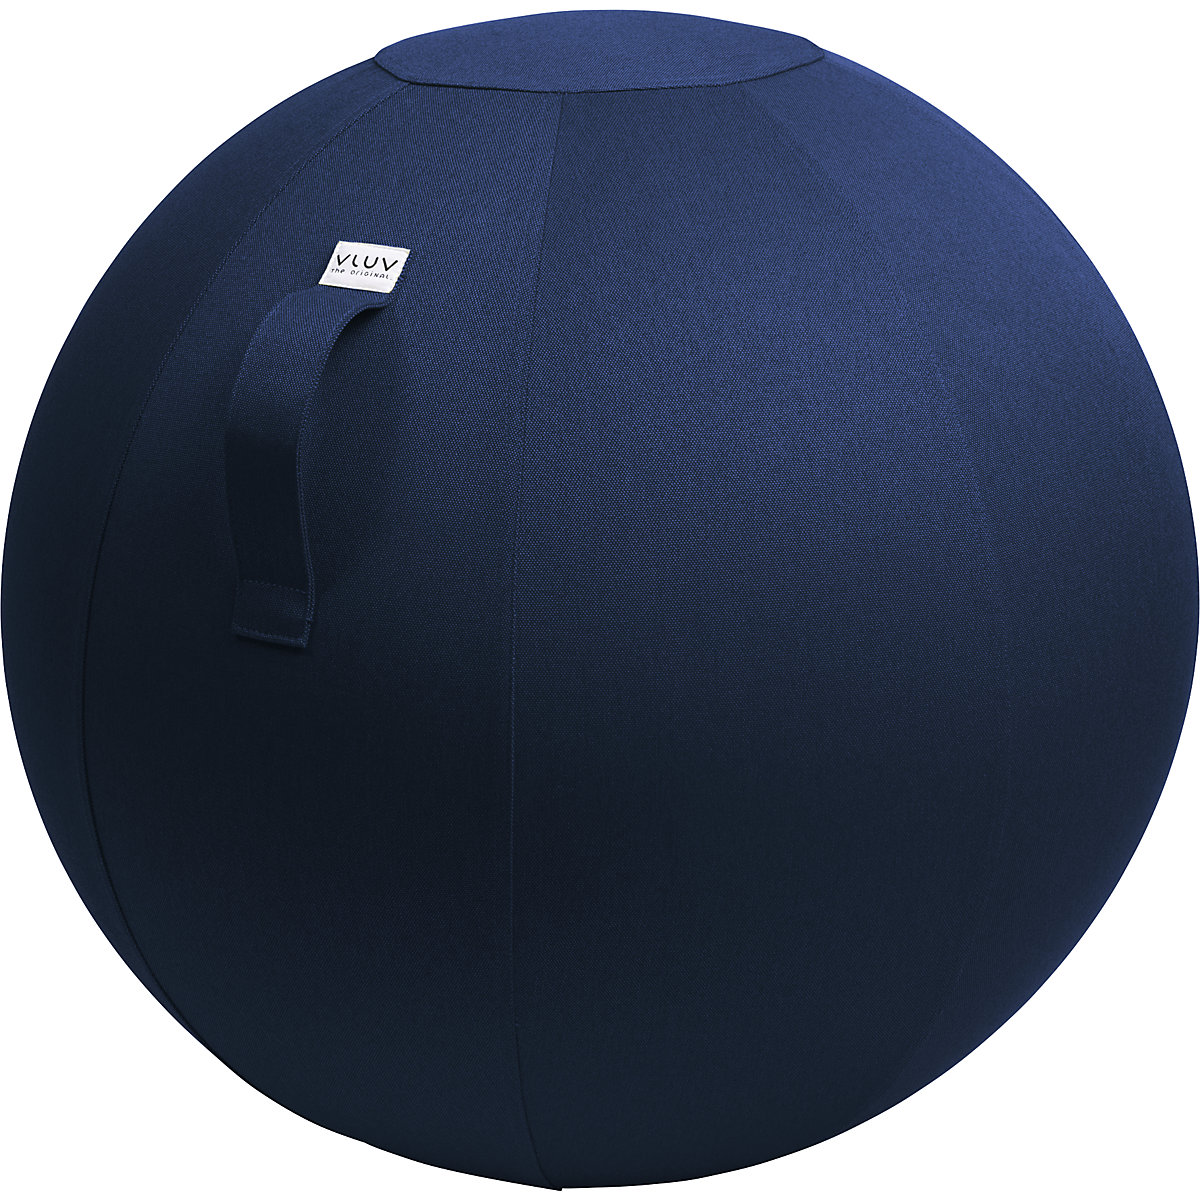 Piłka do siedzenia LEIV – VLUV, pokrowiec z tkaniny o wyglądzie płótna, 600 – 650 mm, błękit królewski-11